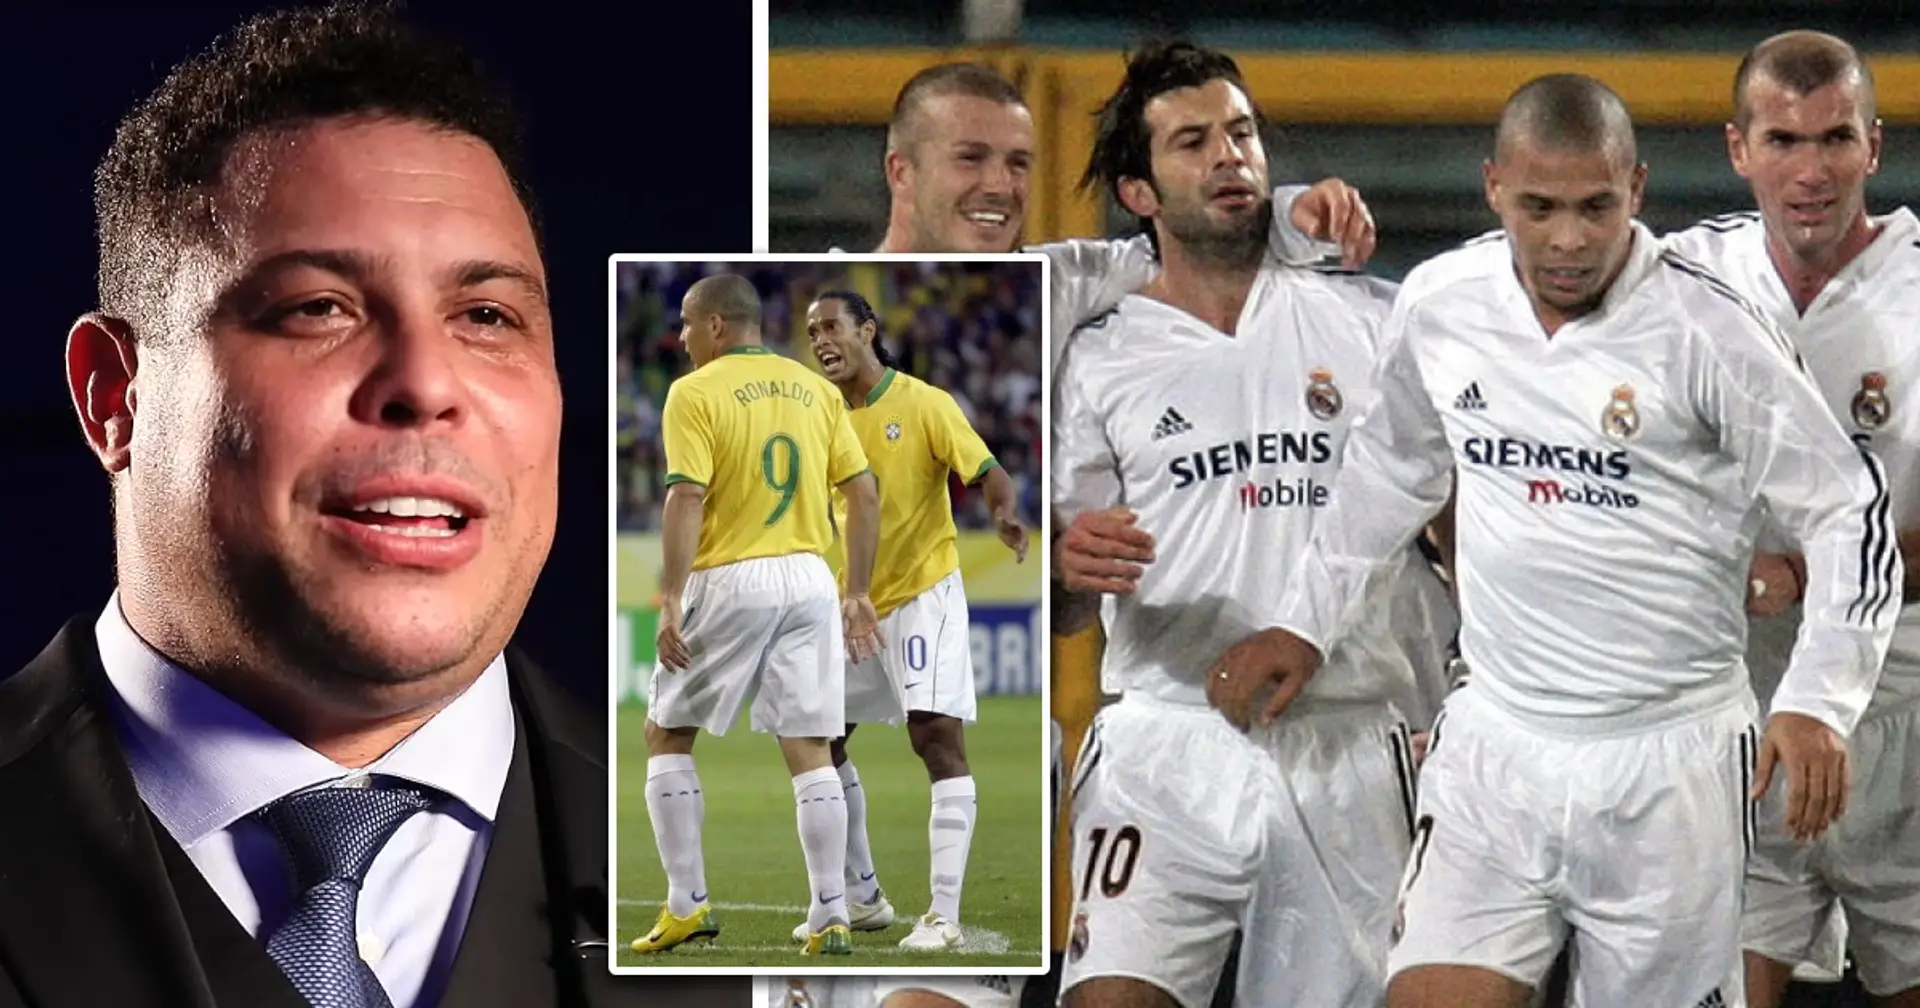 Ronaldo Nazario names the best he ever played with - ignores Ronaldinho and Rivaldo